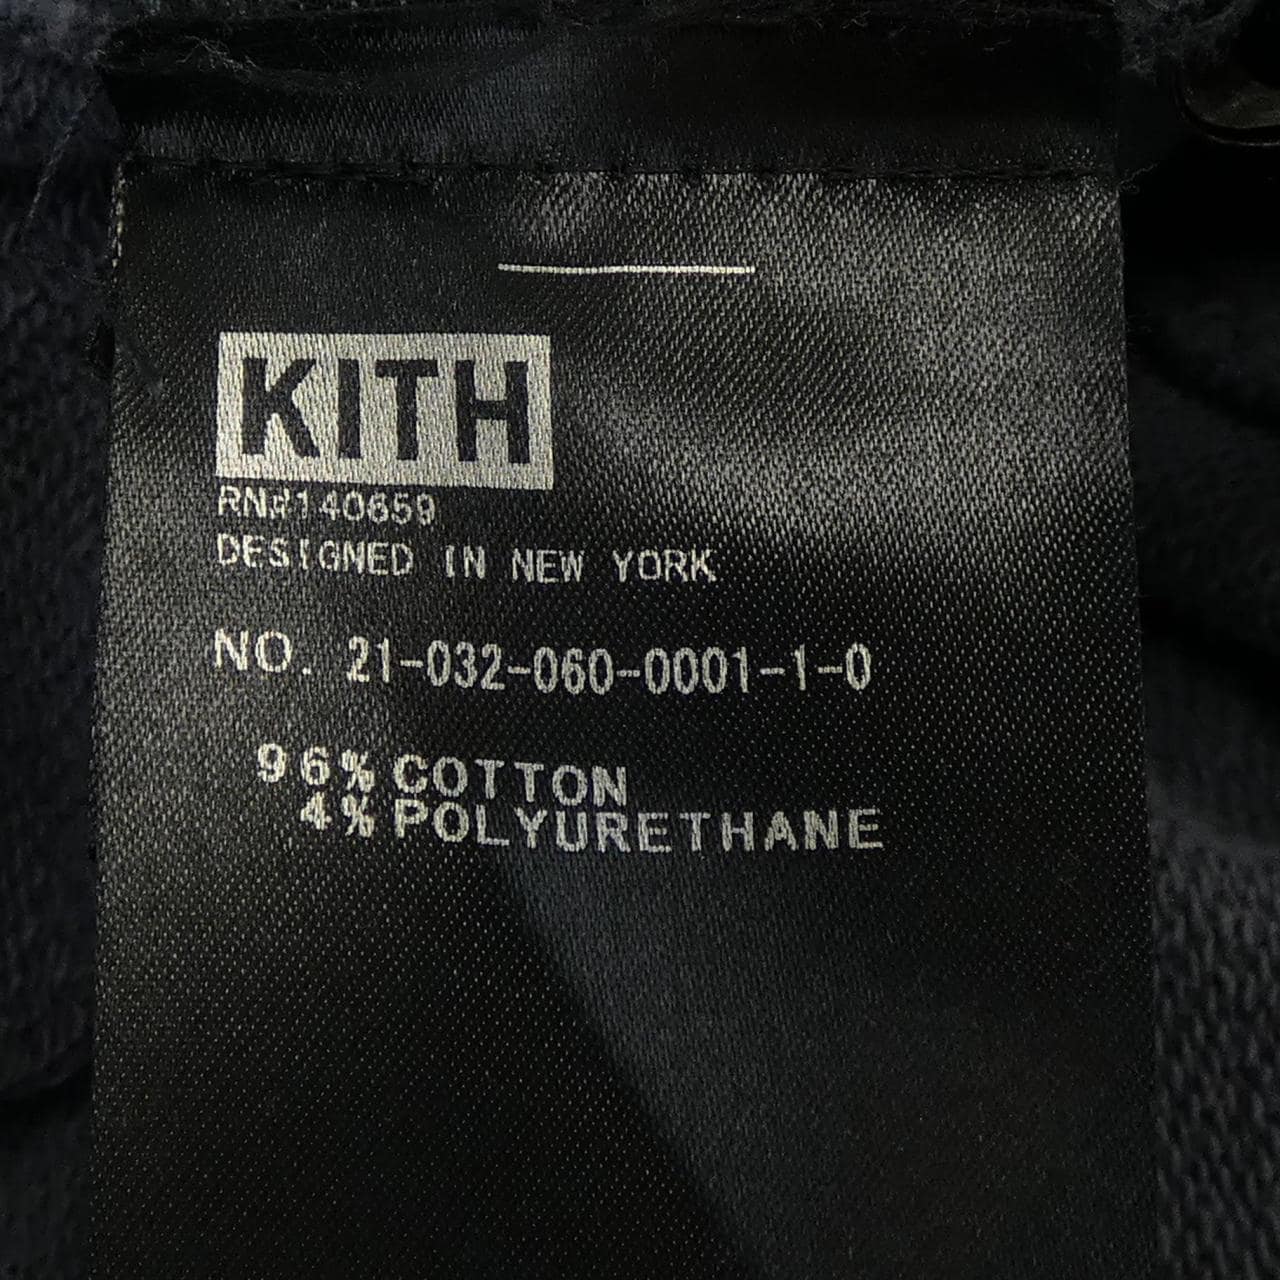 Kith shorts